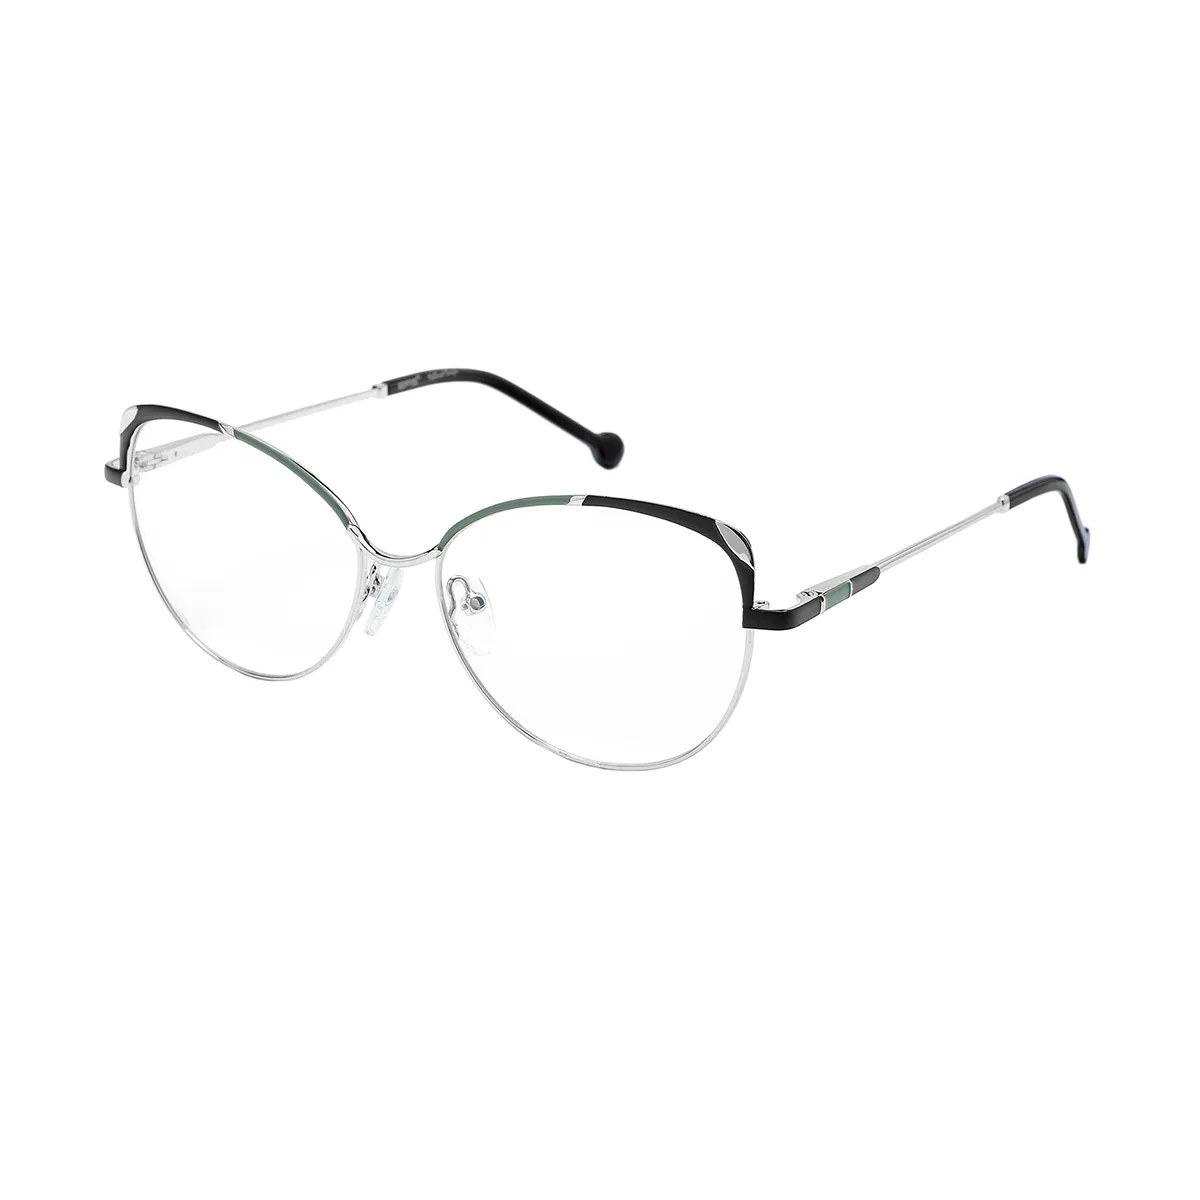 Mignon - Oval Silver Glasses for Women